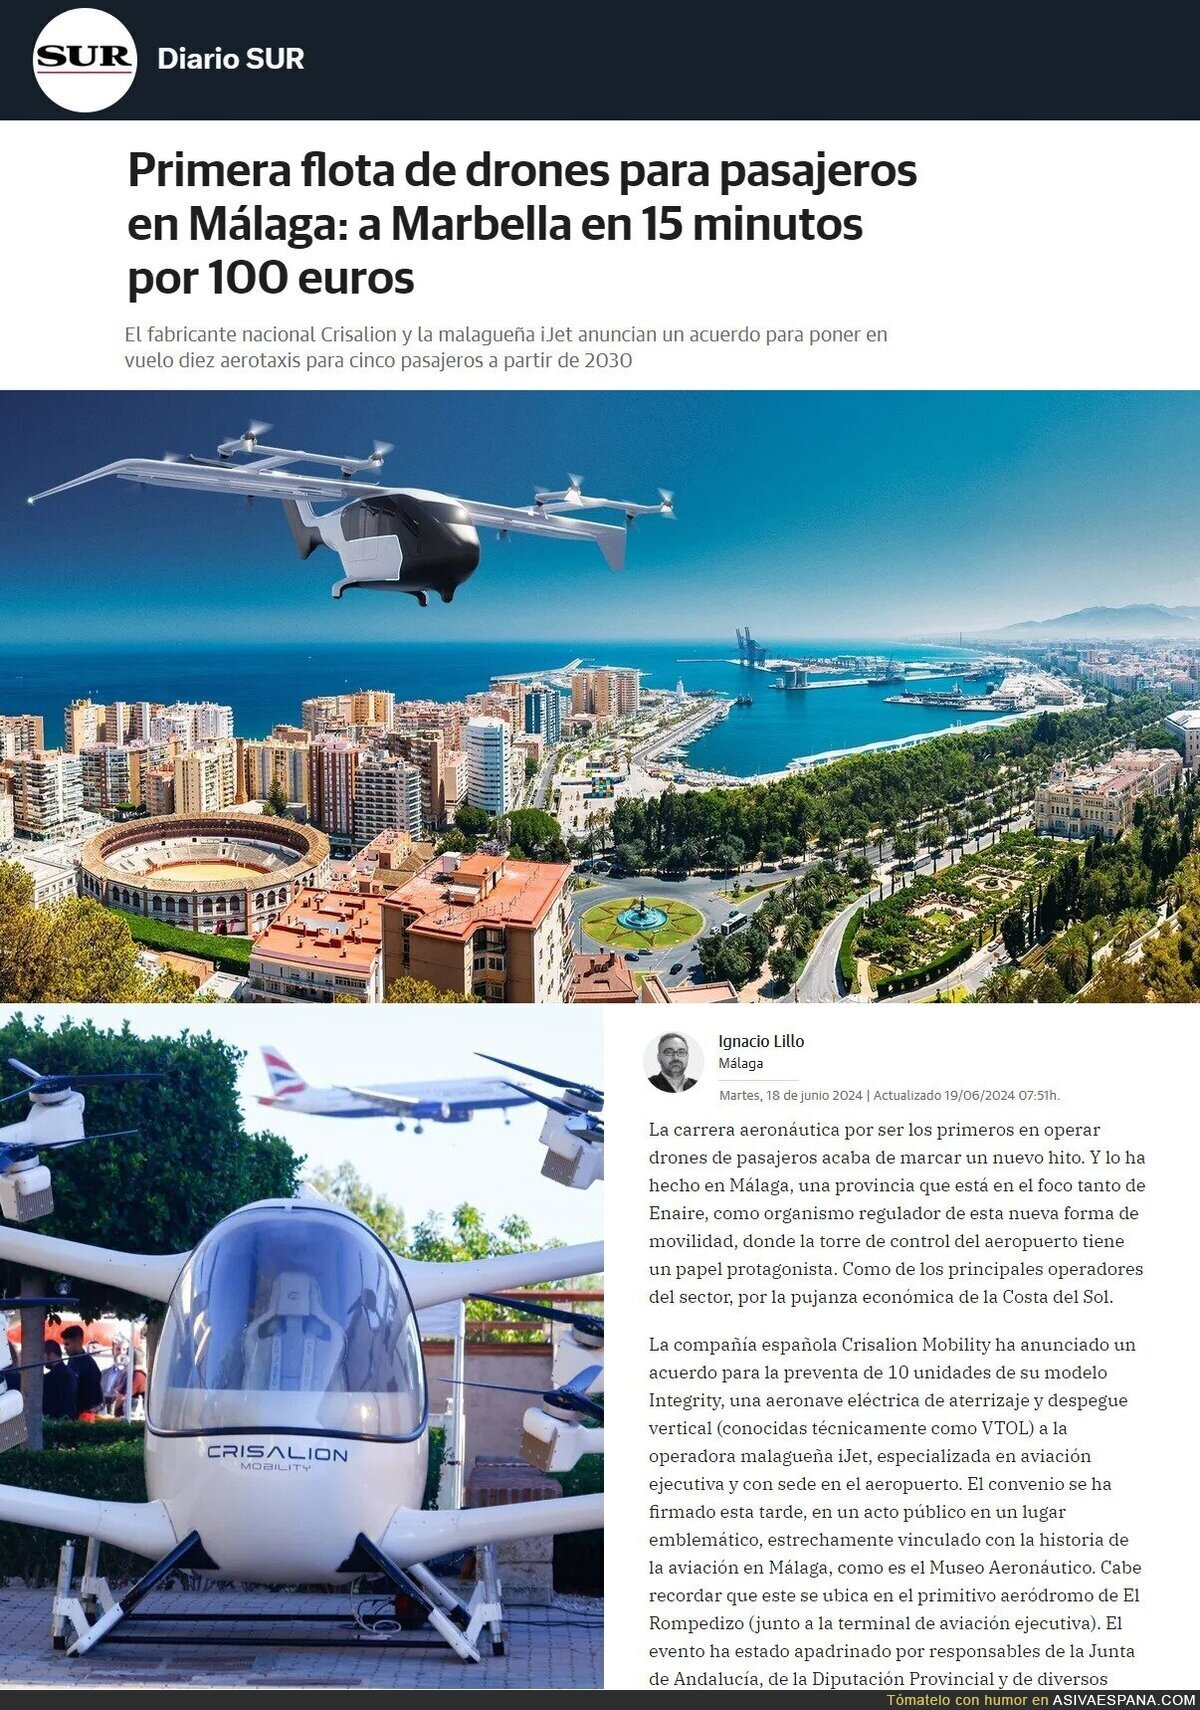 Los primeros Drones aeroTaxis estarán en Málaga